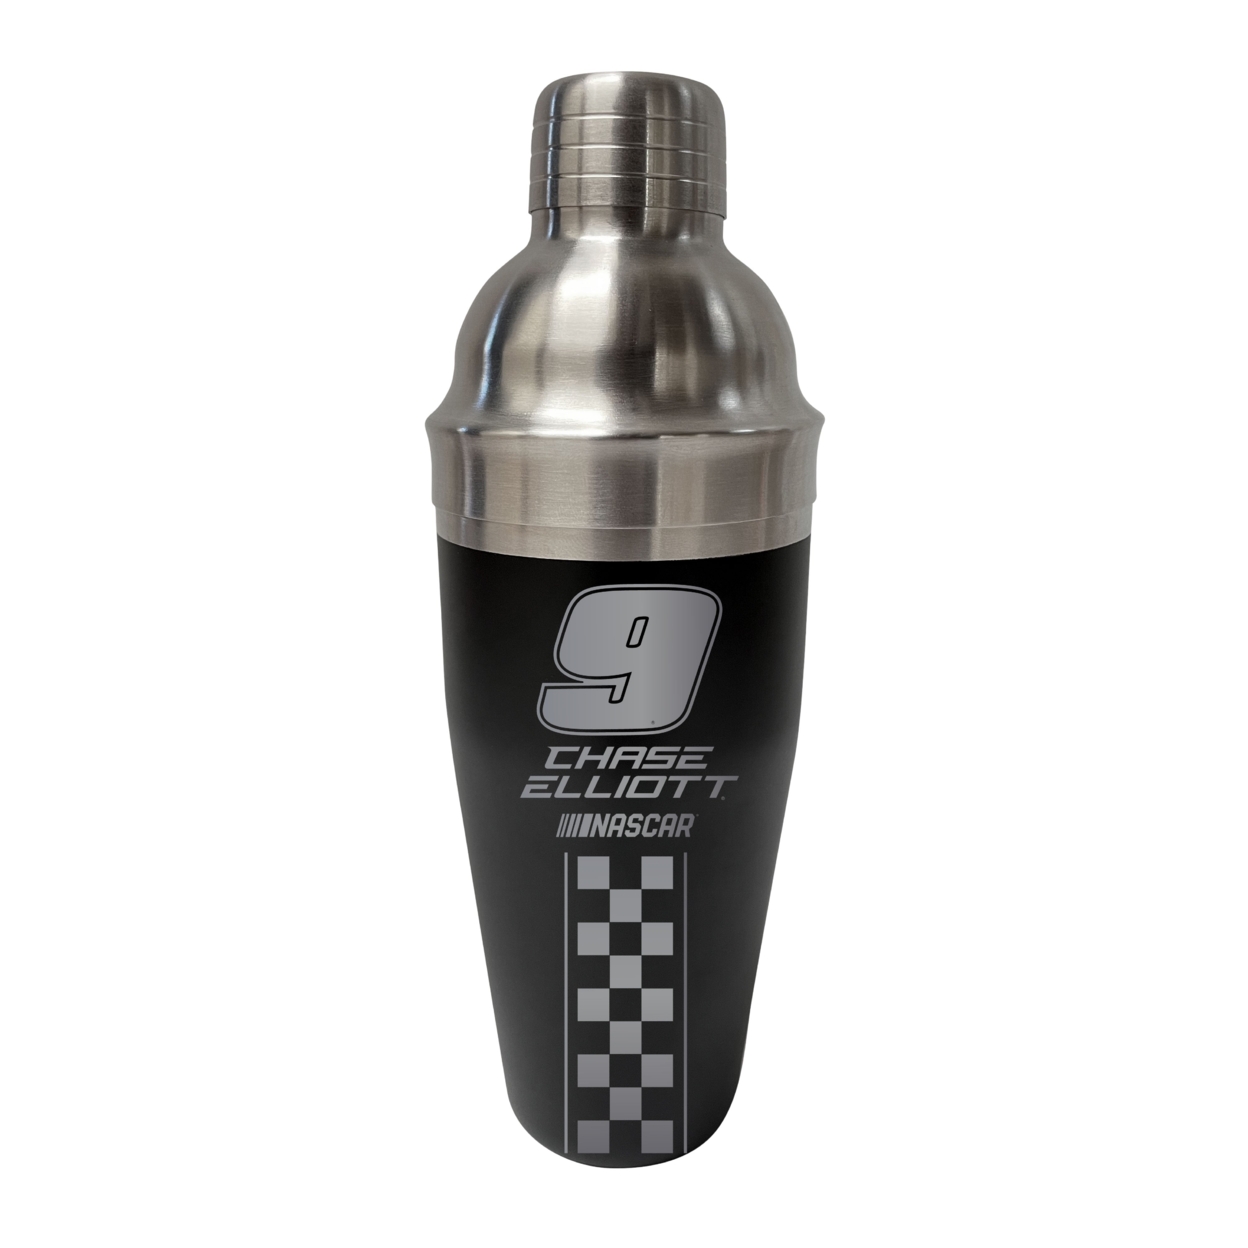 #9 Chase Elliott NASCAR Officially Licensed Cocktail Shaker